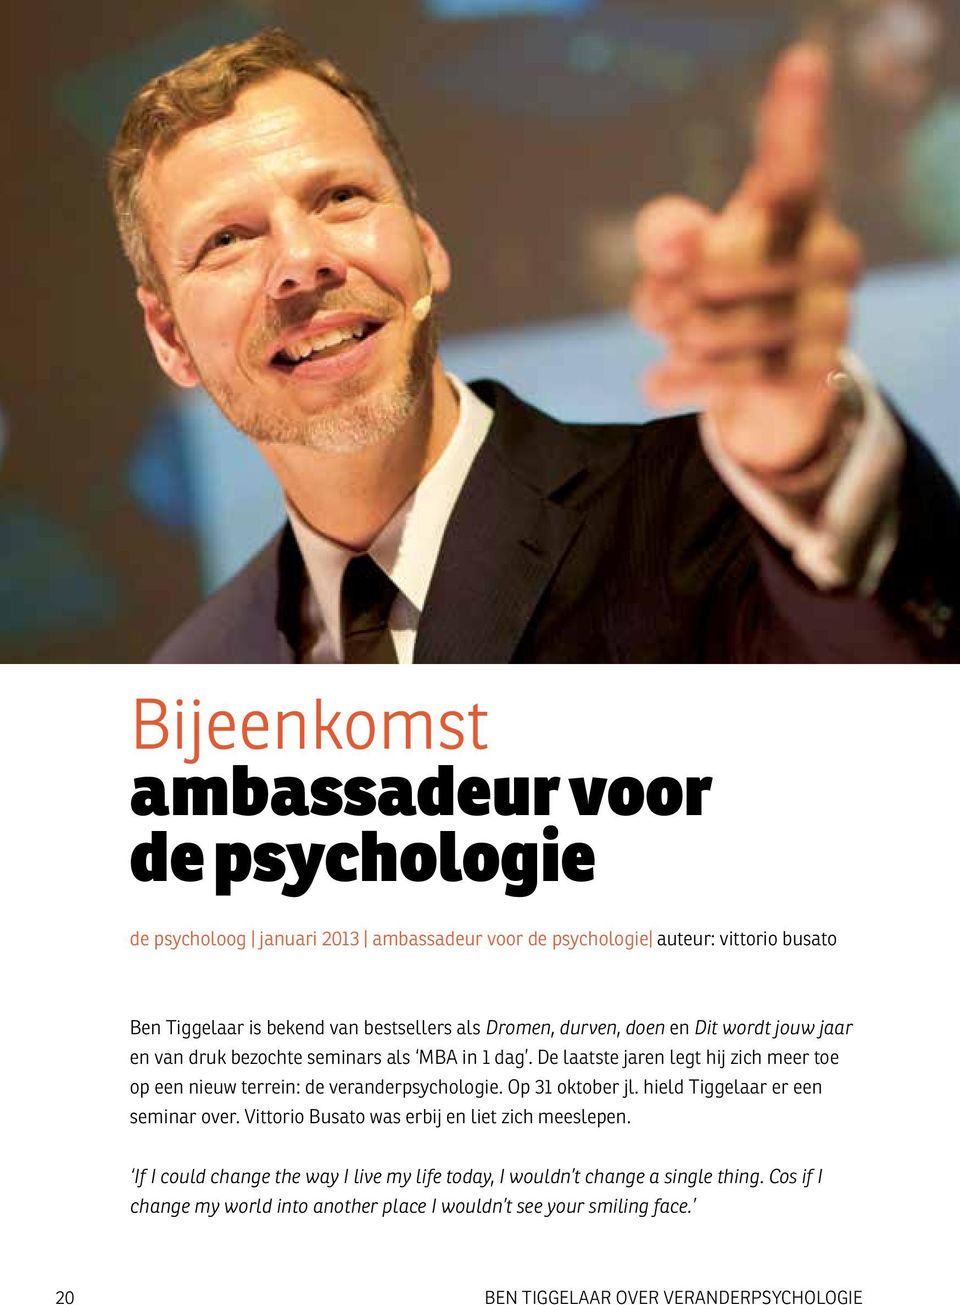 De laatste jaren legt hij zich meer toe op een nieuw terrein: de veranderpsychologie. Op 31 oktober jl. hield Tiggelaar er een seminar over.